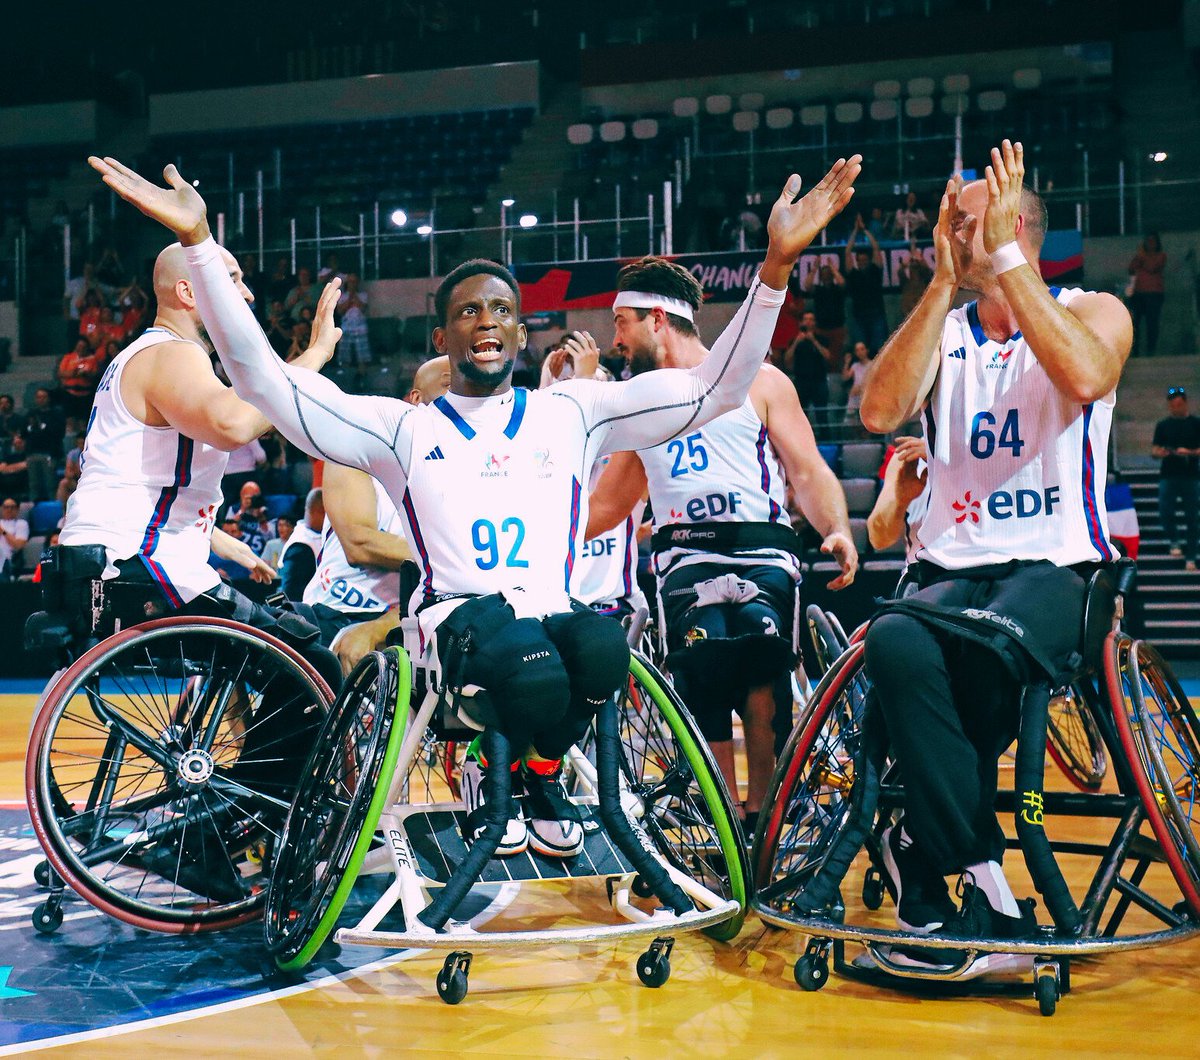 L'équipe de France de Basket Fauteuil est qualifiée pour les #JeuxParalympiques #Paris2024 🤩🇨🇵
Une première depuis 20 ans !!👏🏽👏🏿
Bravo aux joueurs, staff et au public ! 
RDV à l'Arena Bercy à partir du 20 août 🏀🦽 #équipedeFrance #Handisport #BasketFauteuil